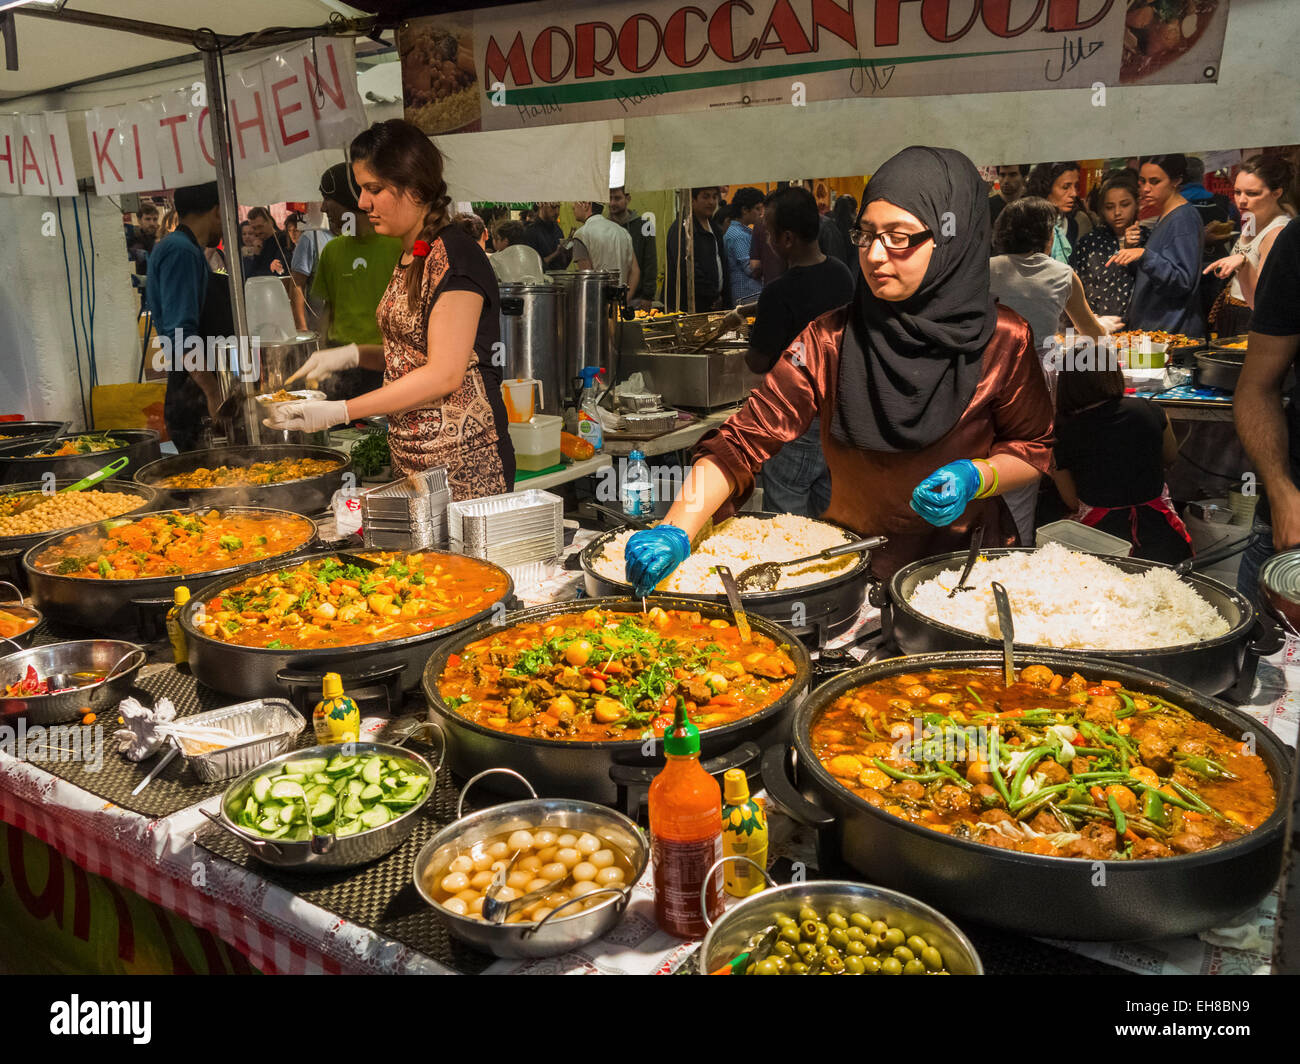 Food marocain dans Brick Lane Market, Tower Hamlets, London, England, UK Banque D'Images